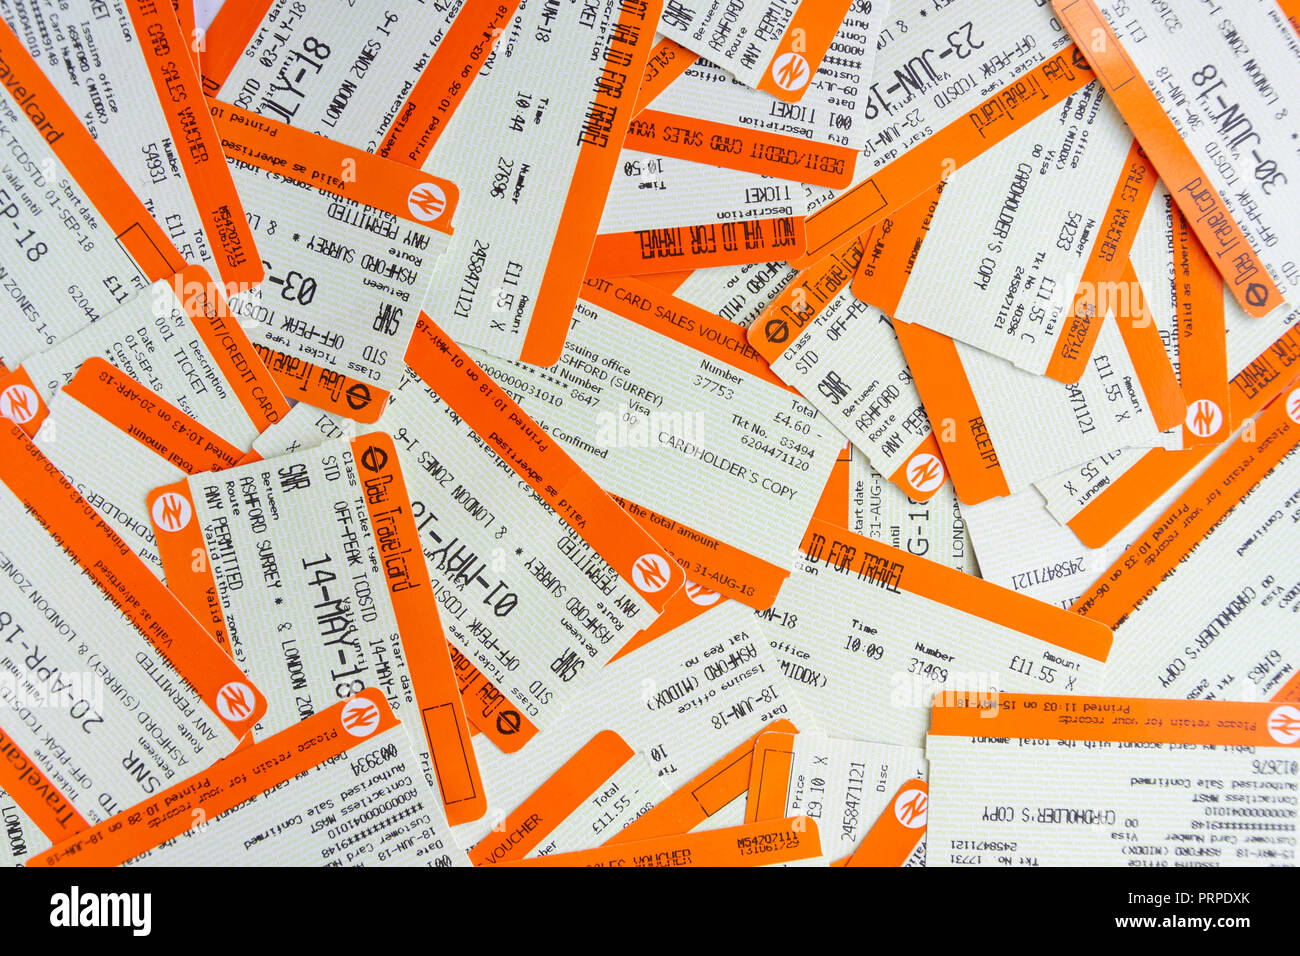 La nature morte de billets de chemin de fer du Sud, Ashford, Surrey, Angleterre, Royaume-Uni Banque D'Images